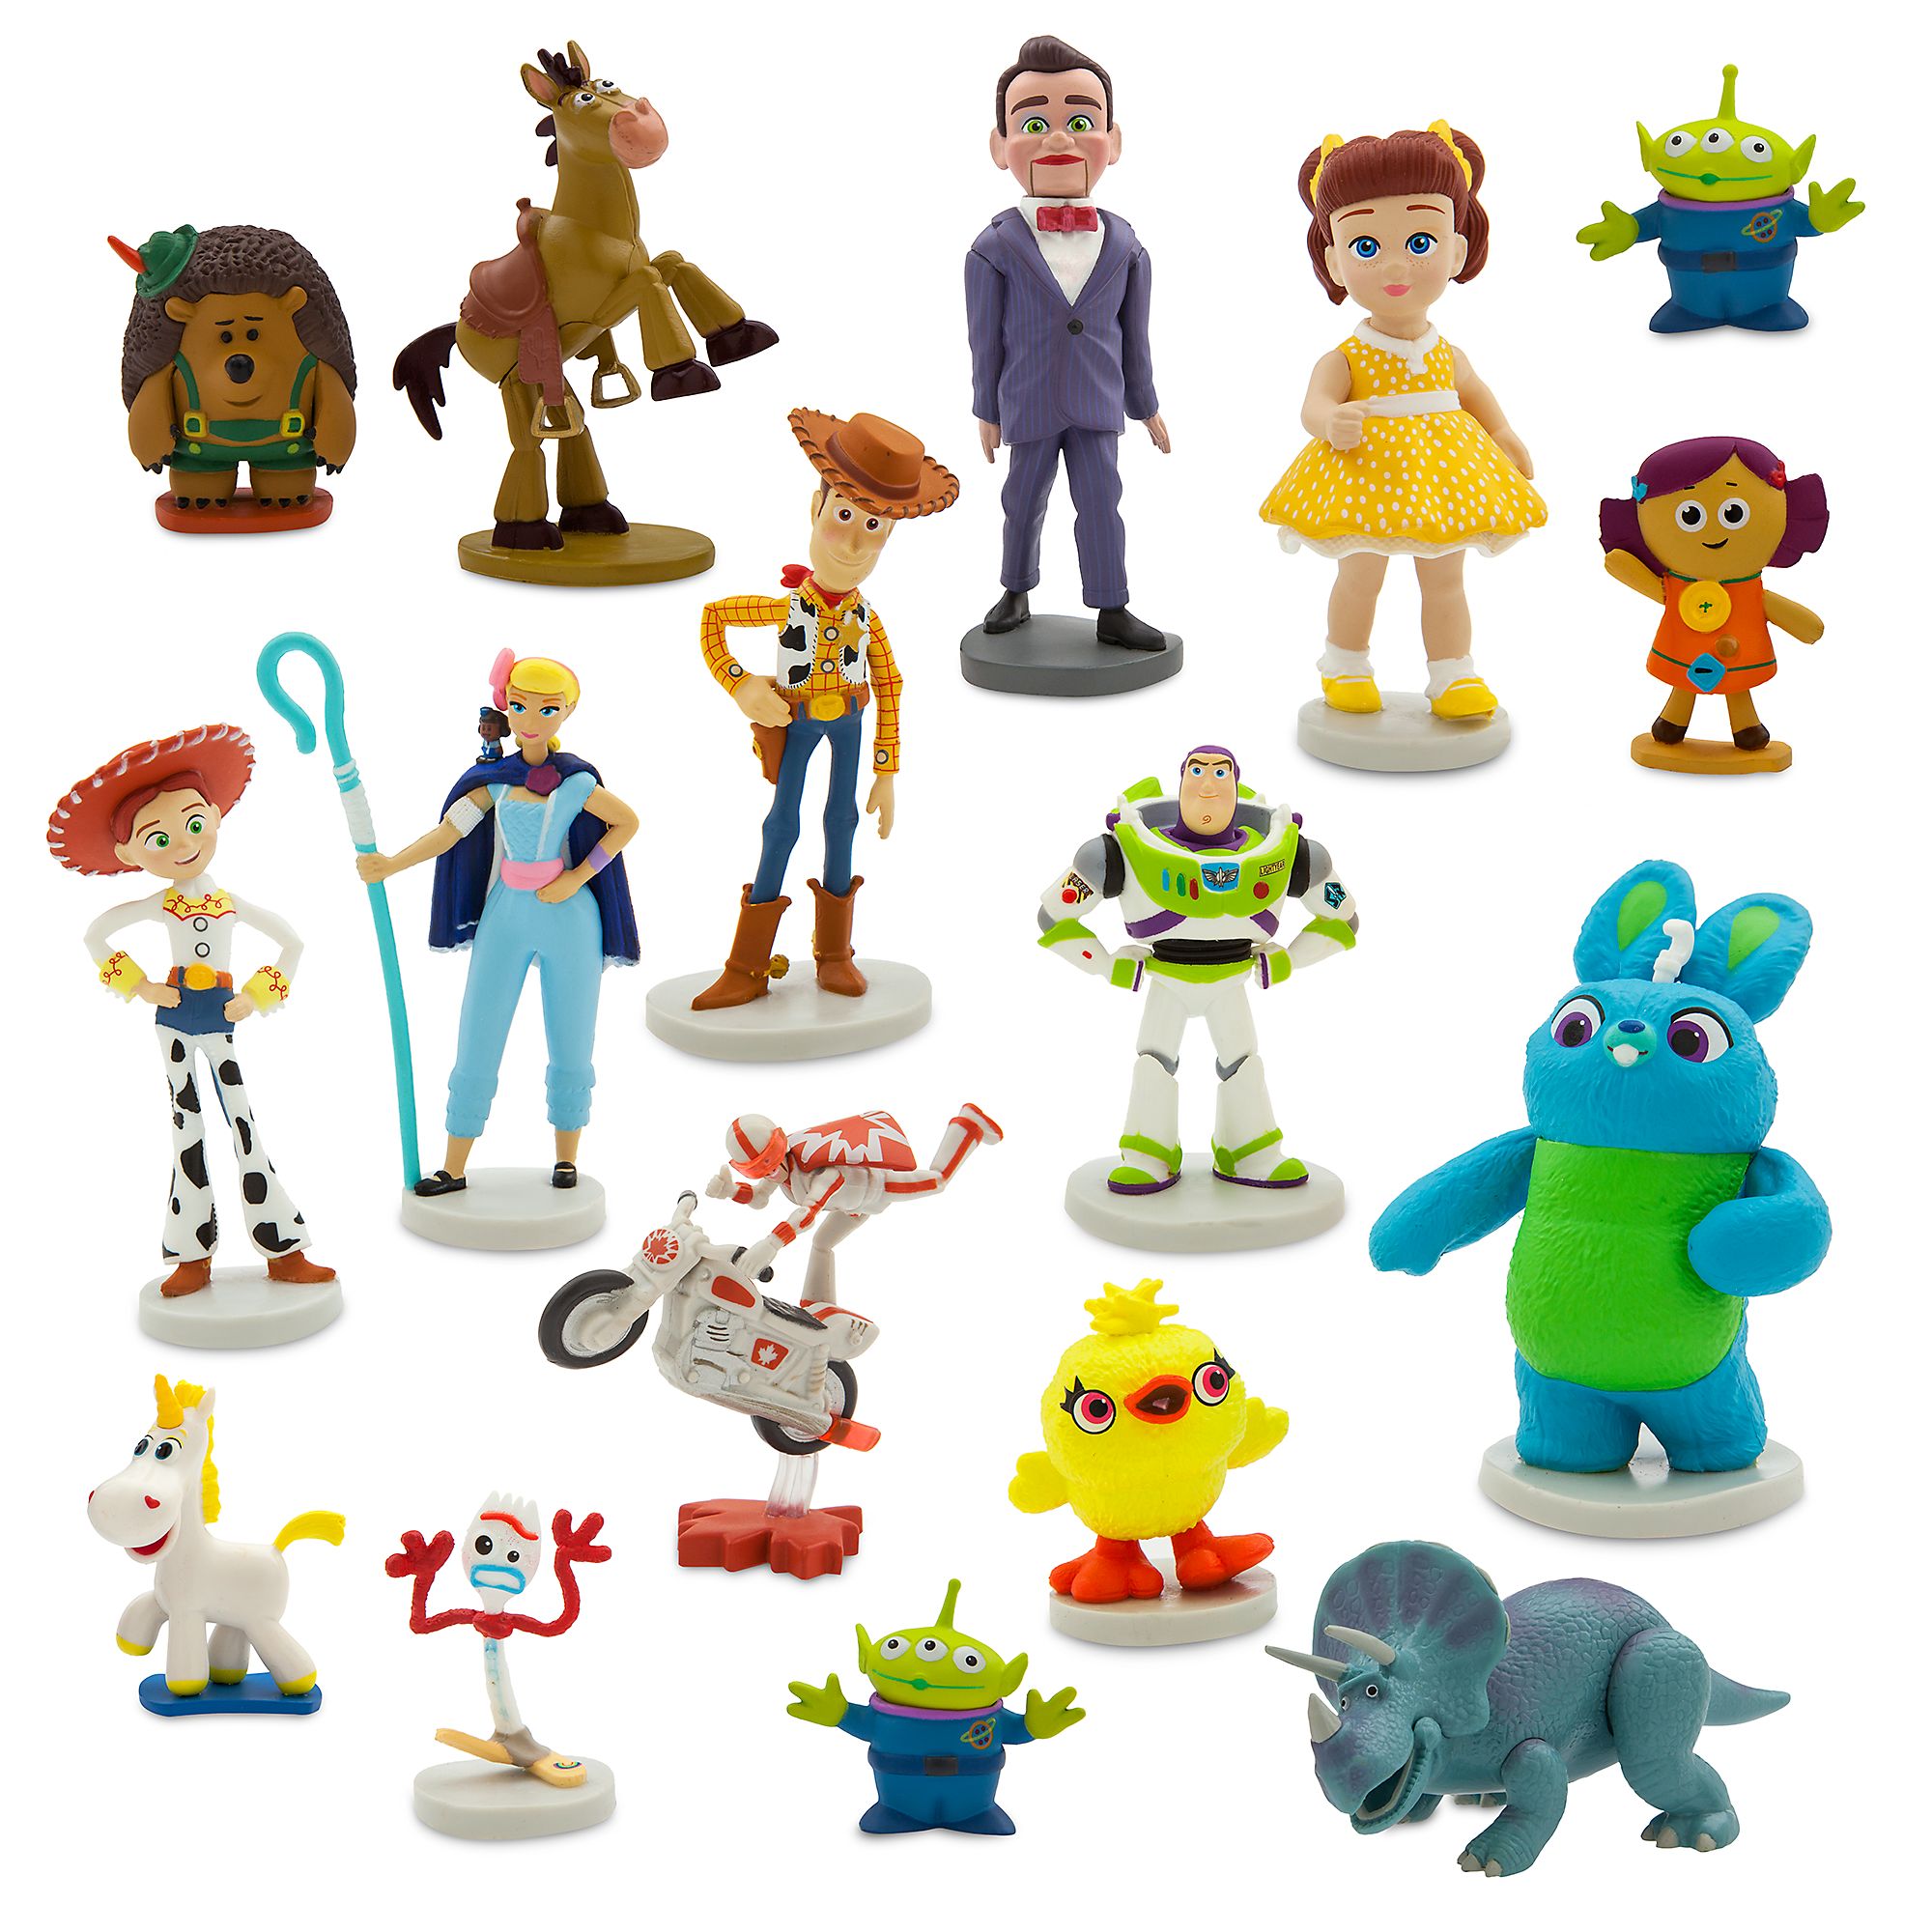 Коллекция игрушек купить. Набор фигурок Disney/Pixar Toy story. Дисней Пиксар история игрушек 4. Toy story 4 мини-фигурки "история игрушек-4" (новые персонажи) ghl54. Фигурки Дисней "история игрушек" 10 шт.